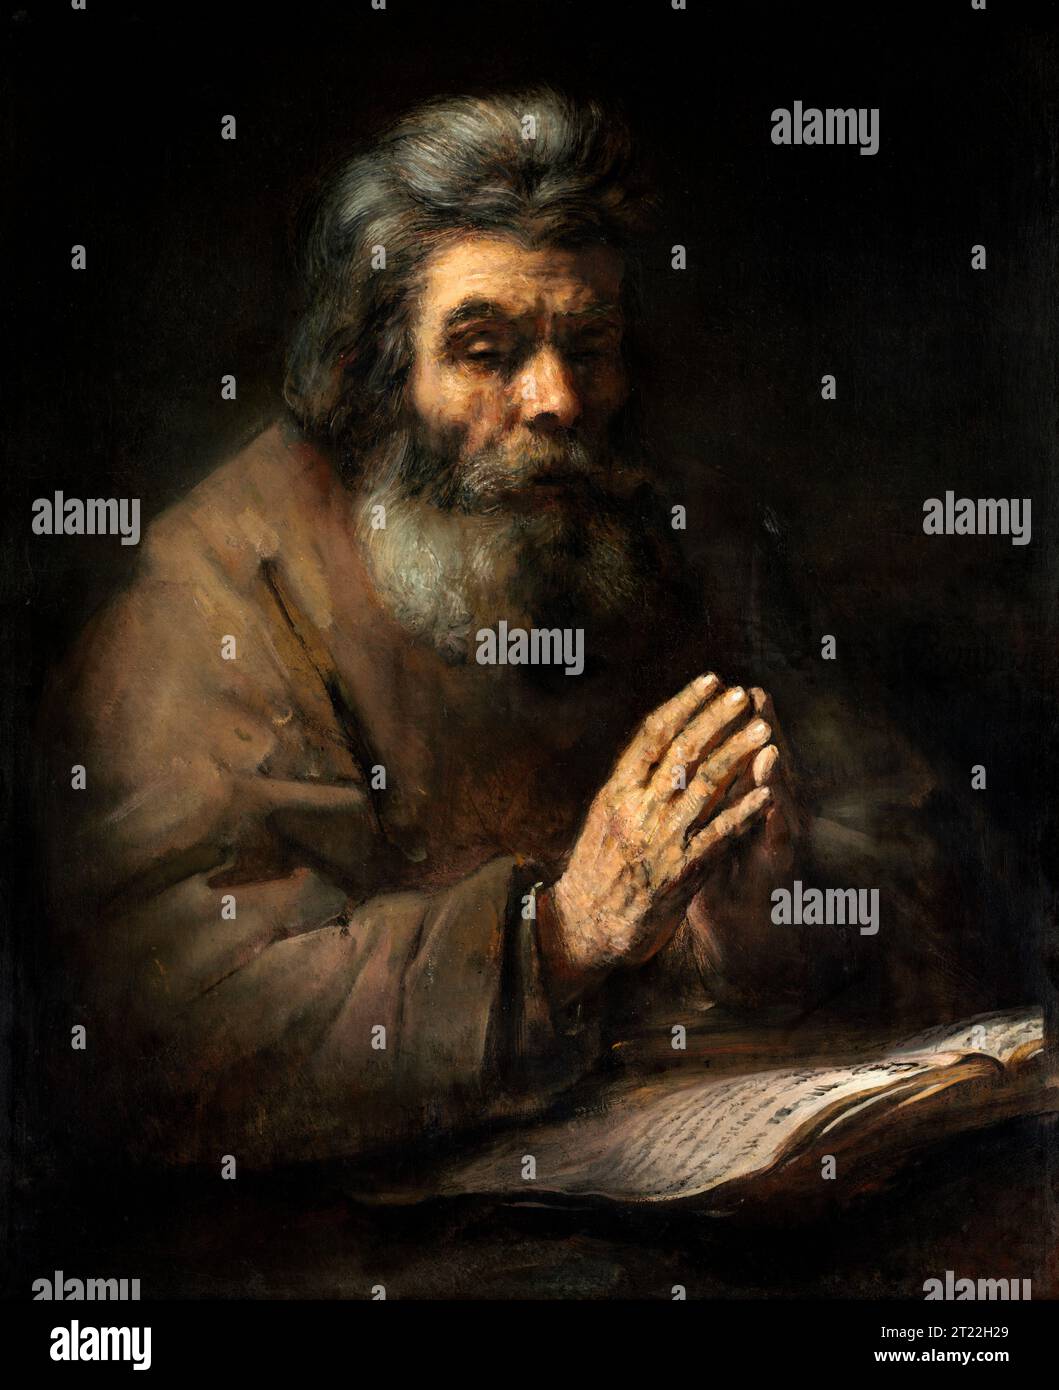 Rembrandt. Un homme âgé en prière de Rembrandt van Rijn (1606-1669), huile sur toile, années 1660 Banque D'Images